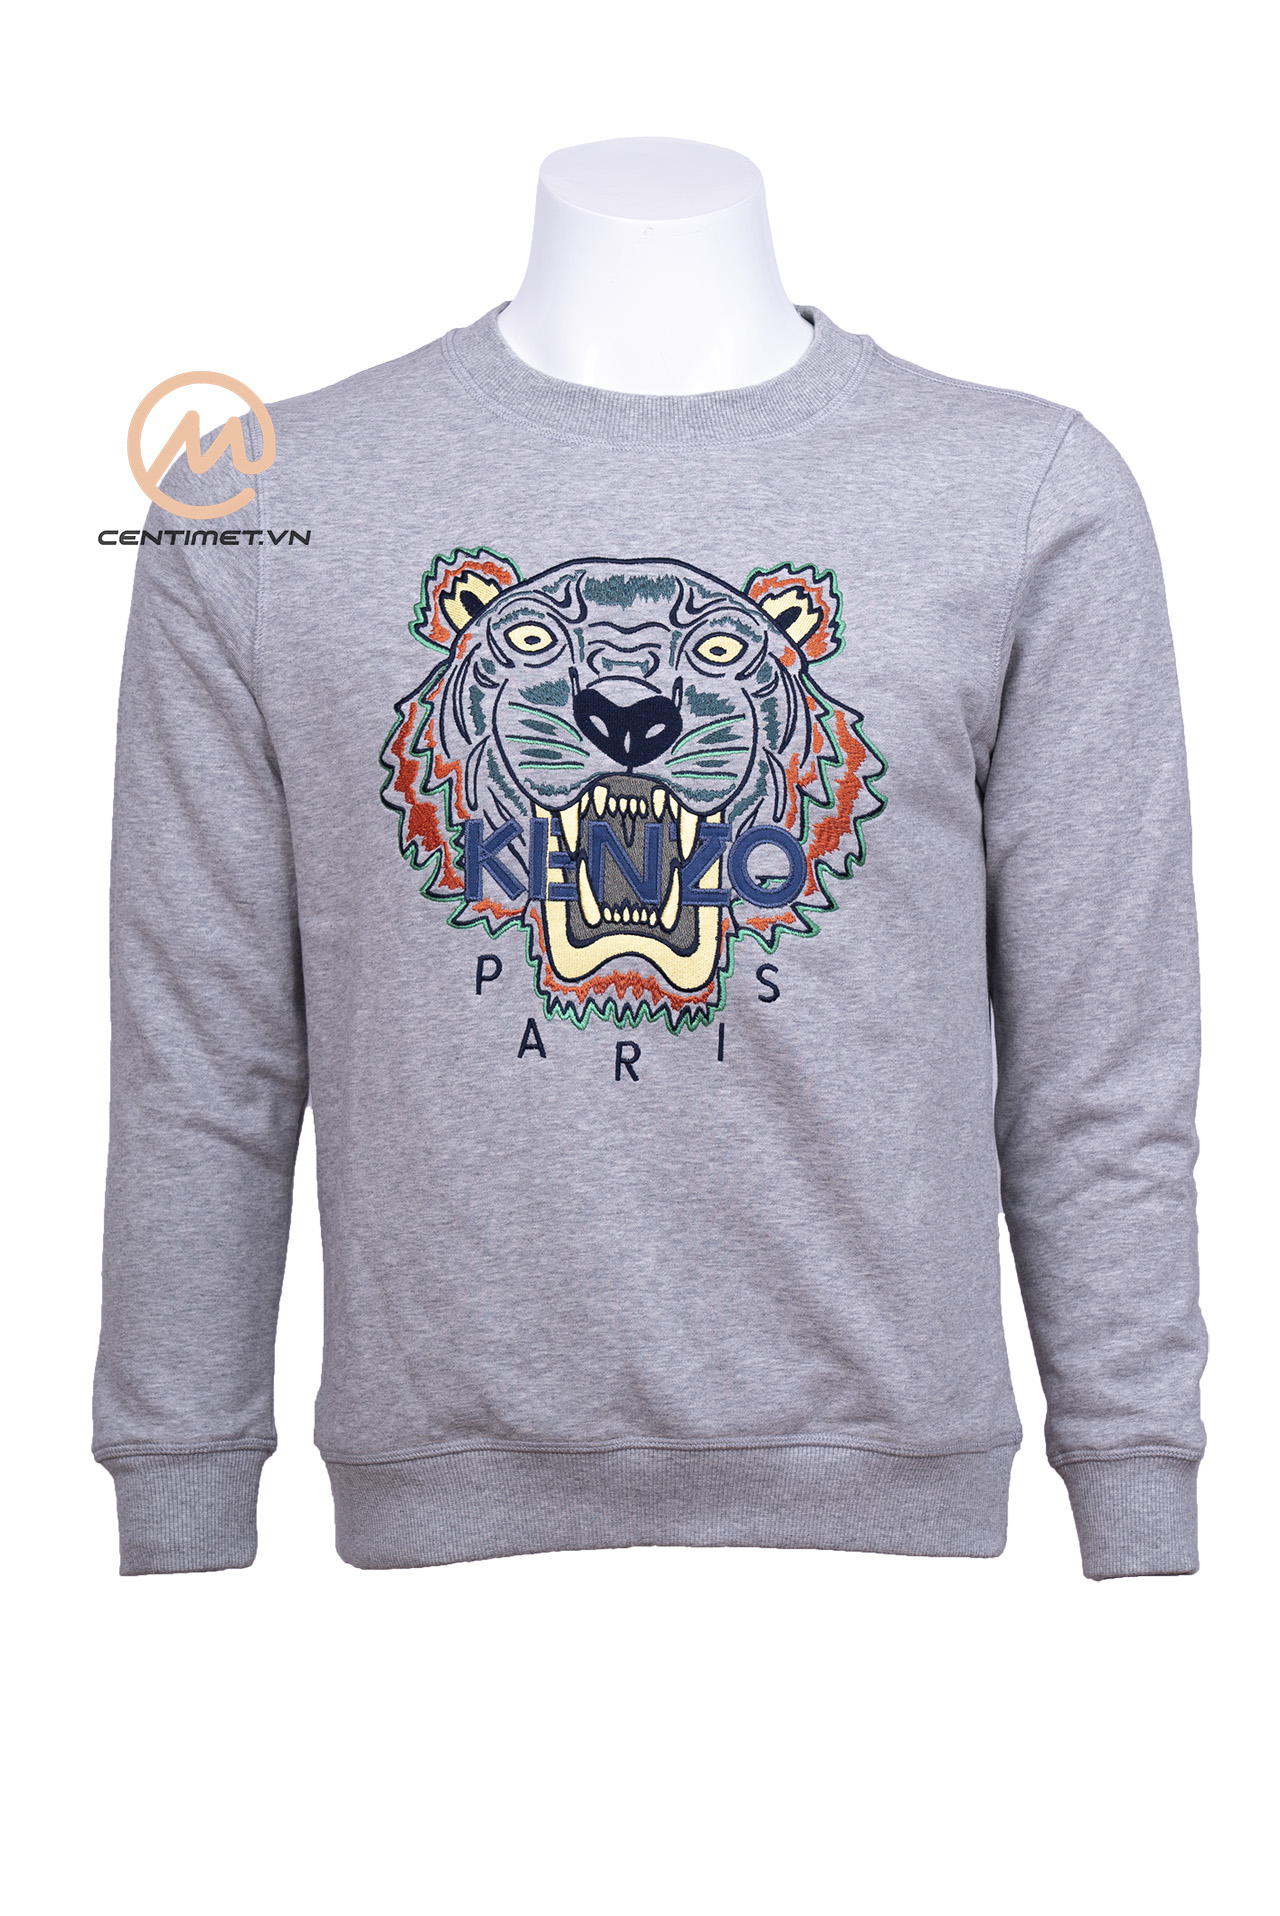 Ao Kenzo Tiger Sweatshirt01246